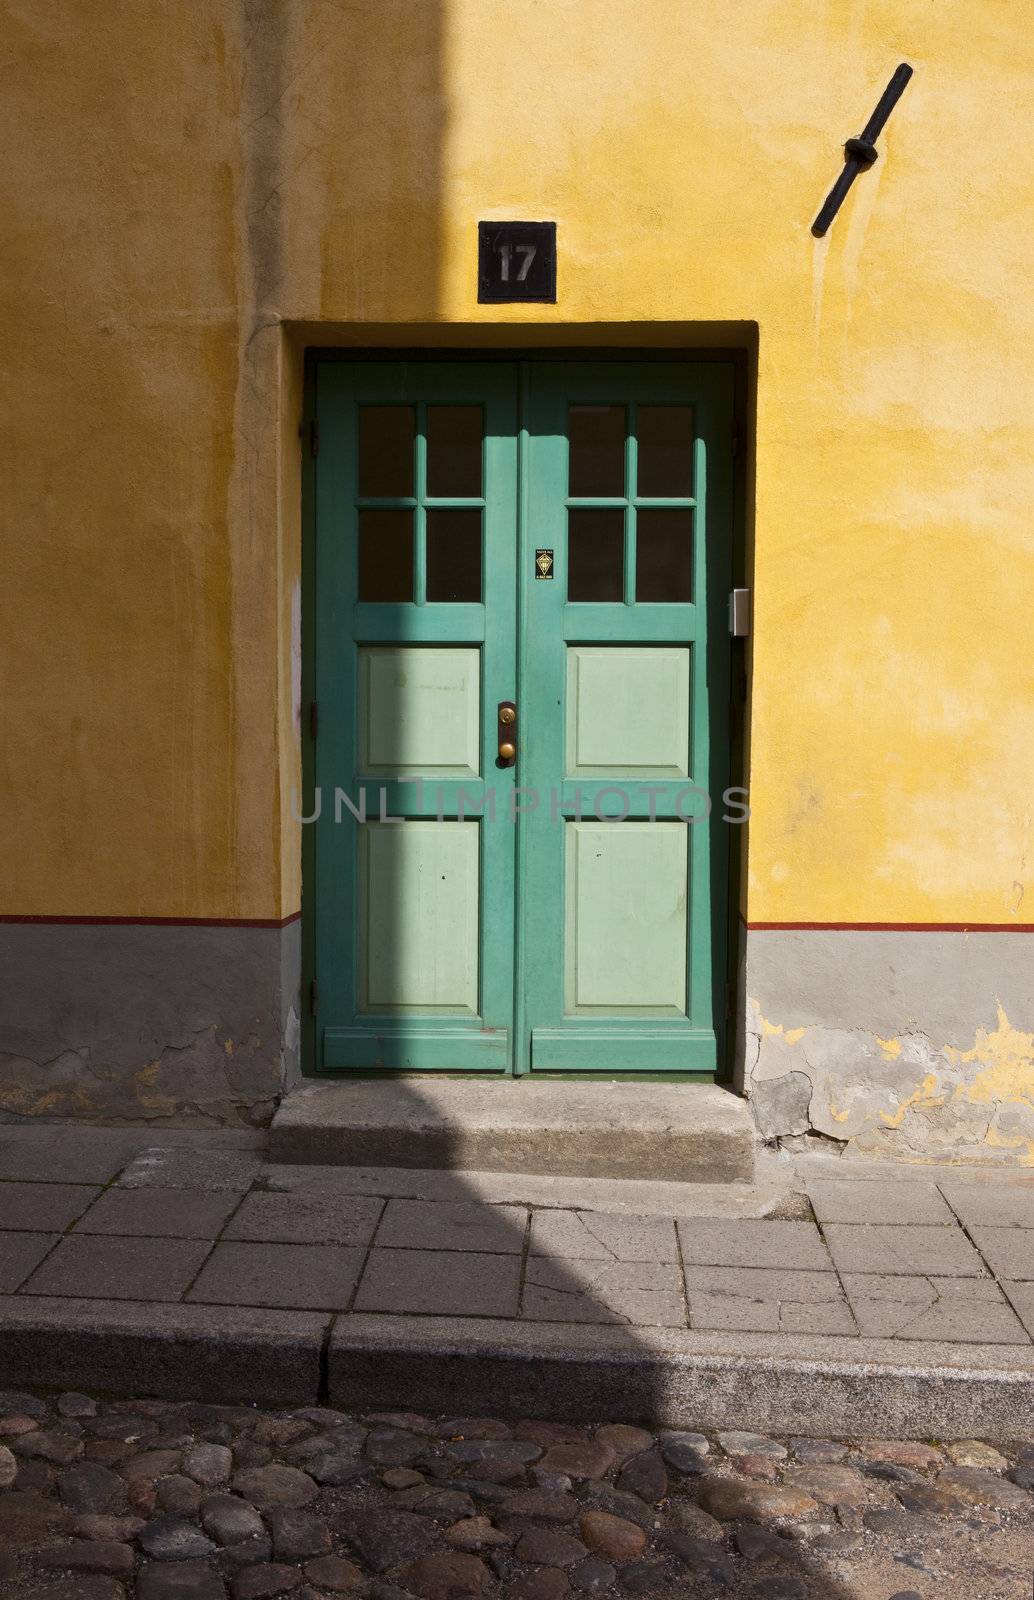 Tallinn Doorway by chrisdorney